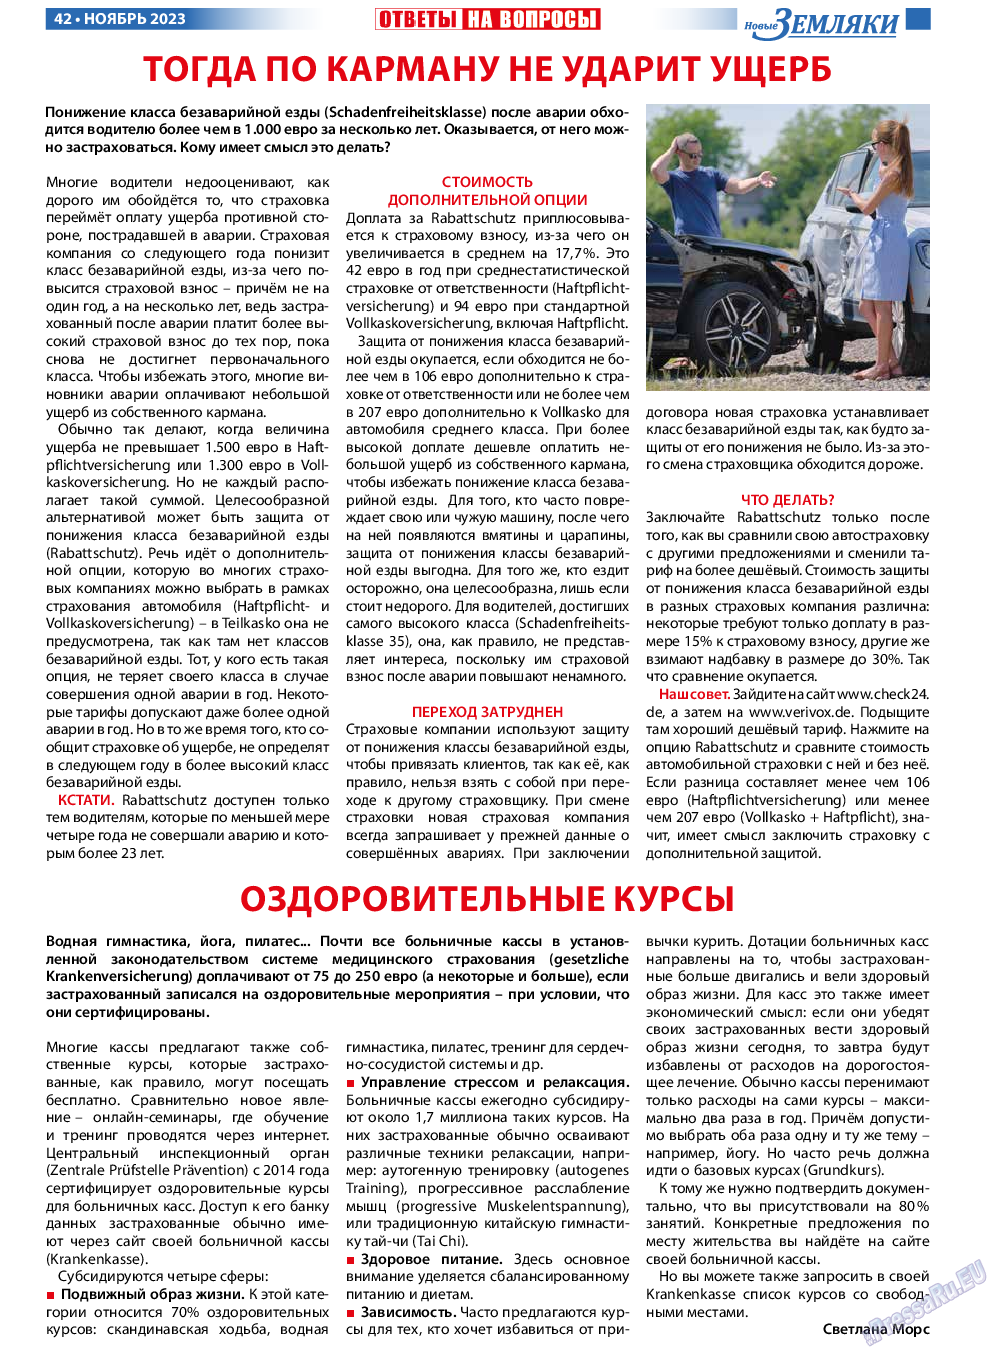 Новые Земляки, газета. 2023 №11 стр.42